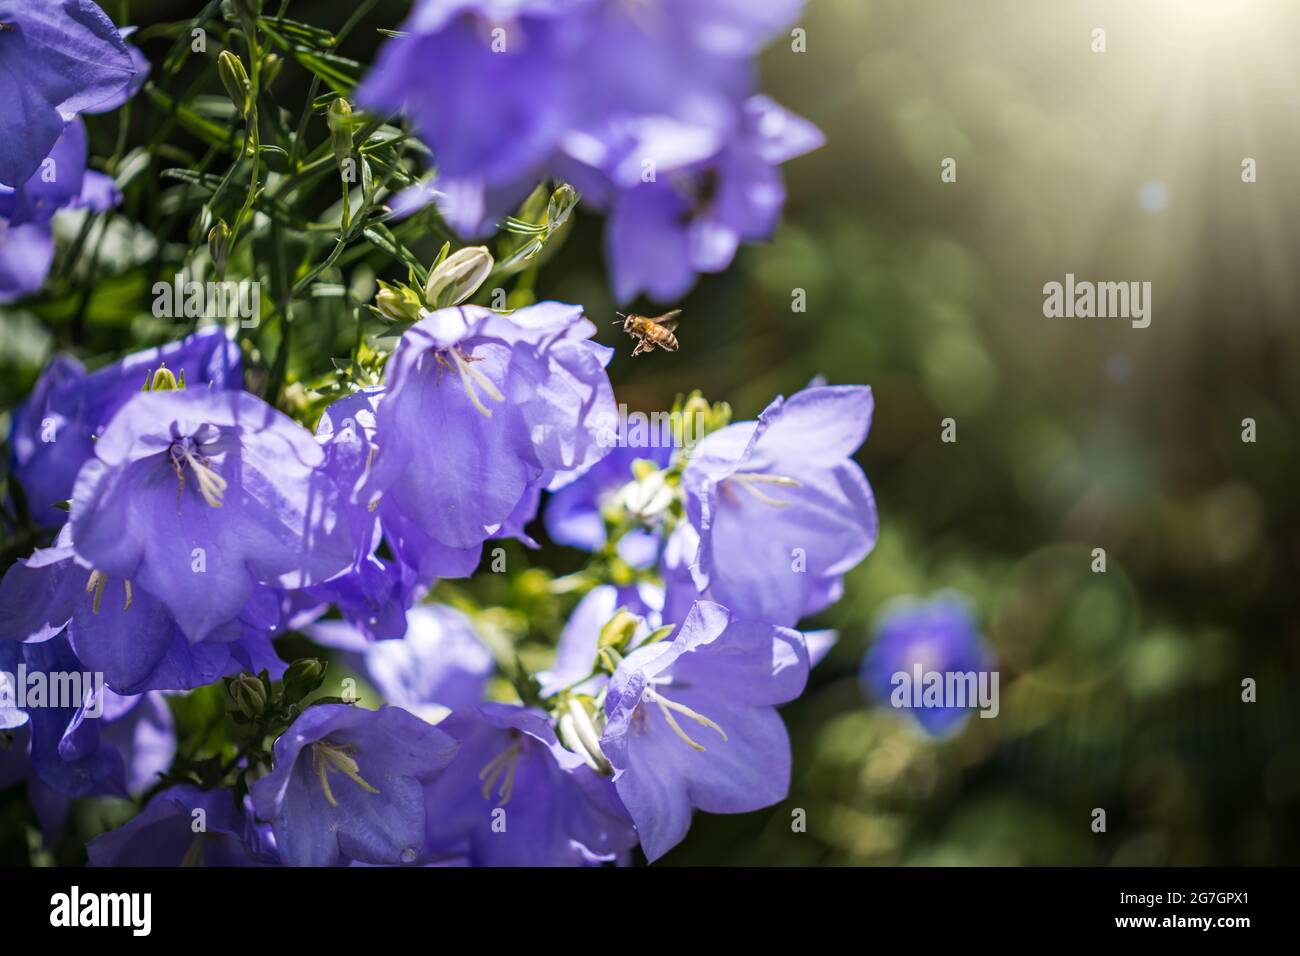 Bei fiori con vespa che volano hovering per impollinare le piante. Splendida luce solare dorata che splende. Impollinazione di fiori selvatici raccolta Foto Stock